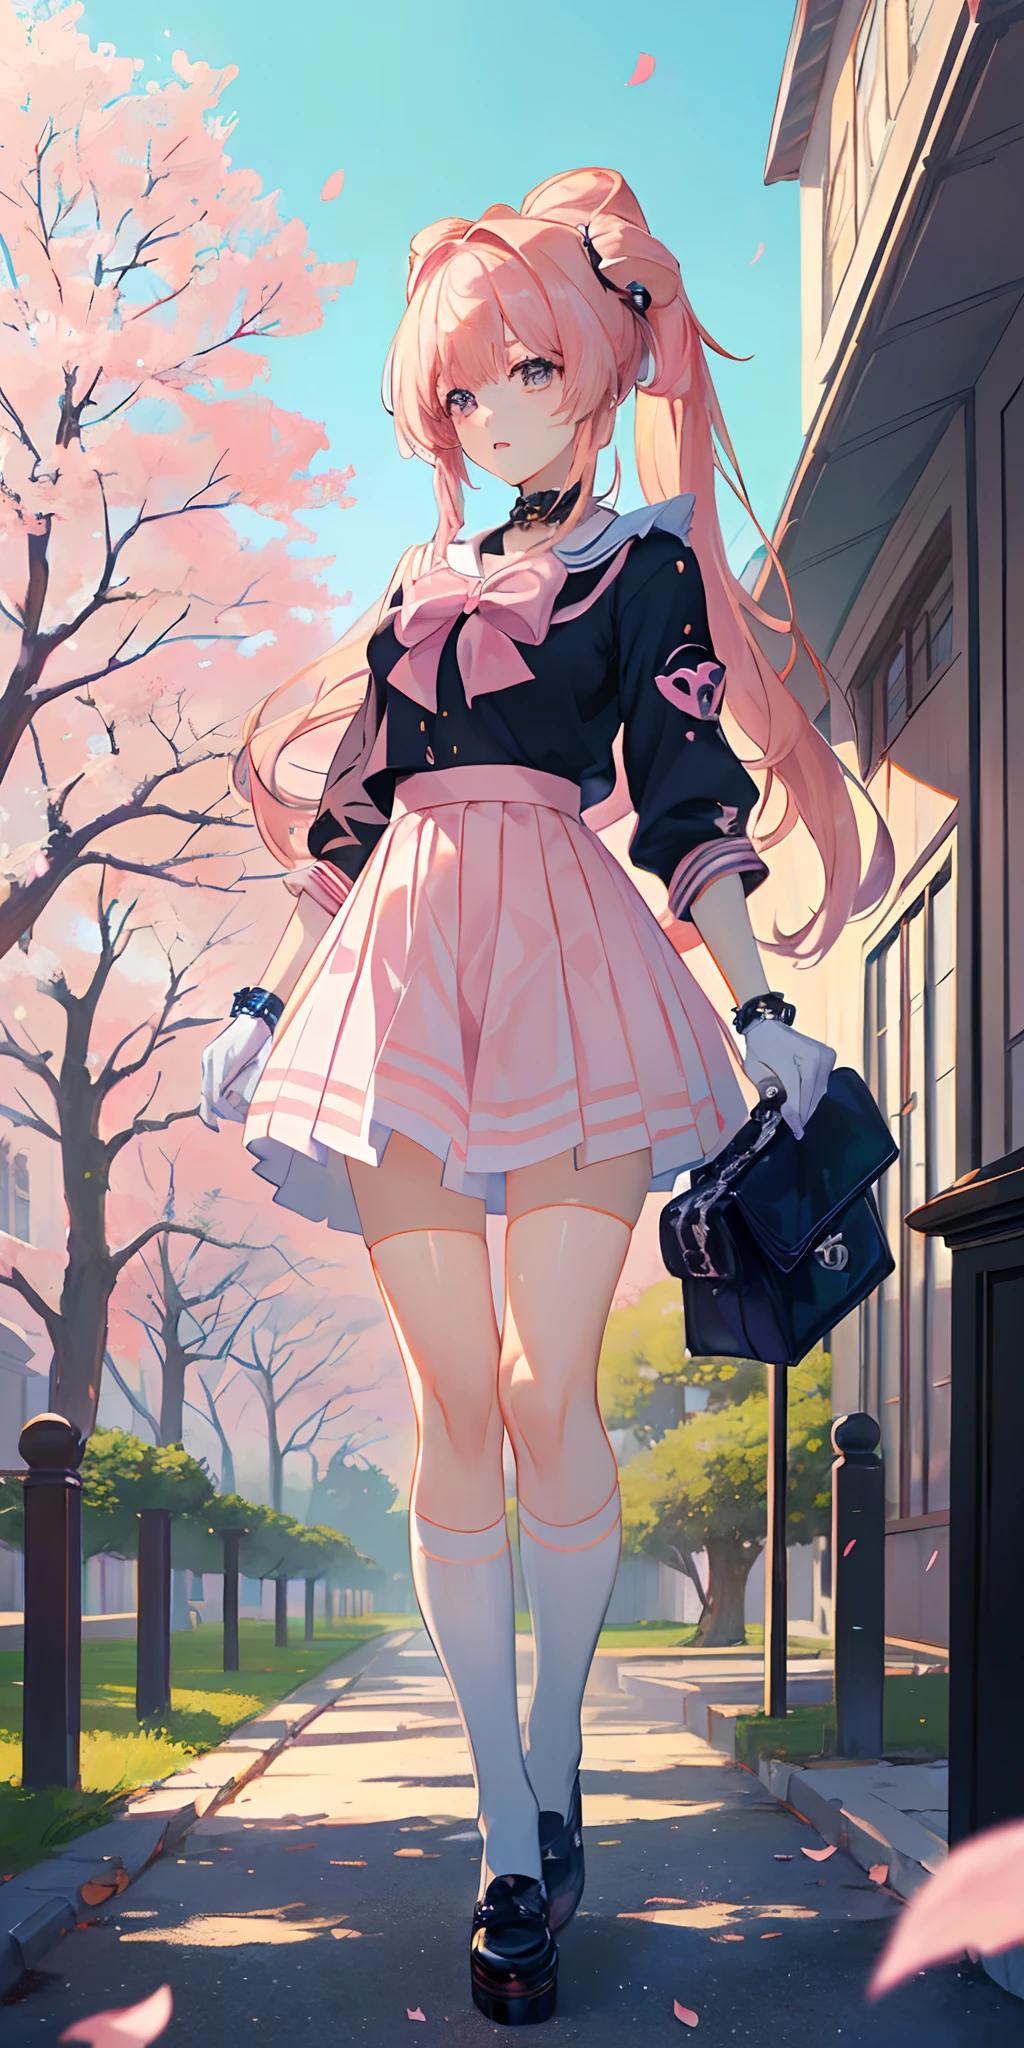 ((Anime-Stil)), ((beste Qualität)), ((Meisterwerk)), ((HDR+)), (beste Leistung), (Beste Beleuchtung), (ein College-Mädchen mit rosa Chanel-Haaren mit Pony), trägt ein , in einem [College-Straßenhintergrund auf einem Sakura-Baum, der Blütenblätter fallen lässt], [Wlop], [Takehino Inoue], [Oh! Großartig]